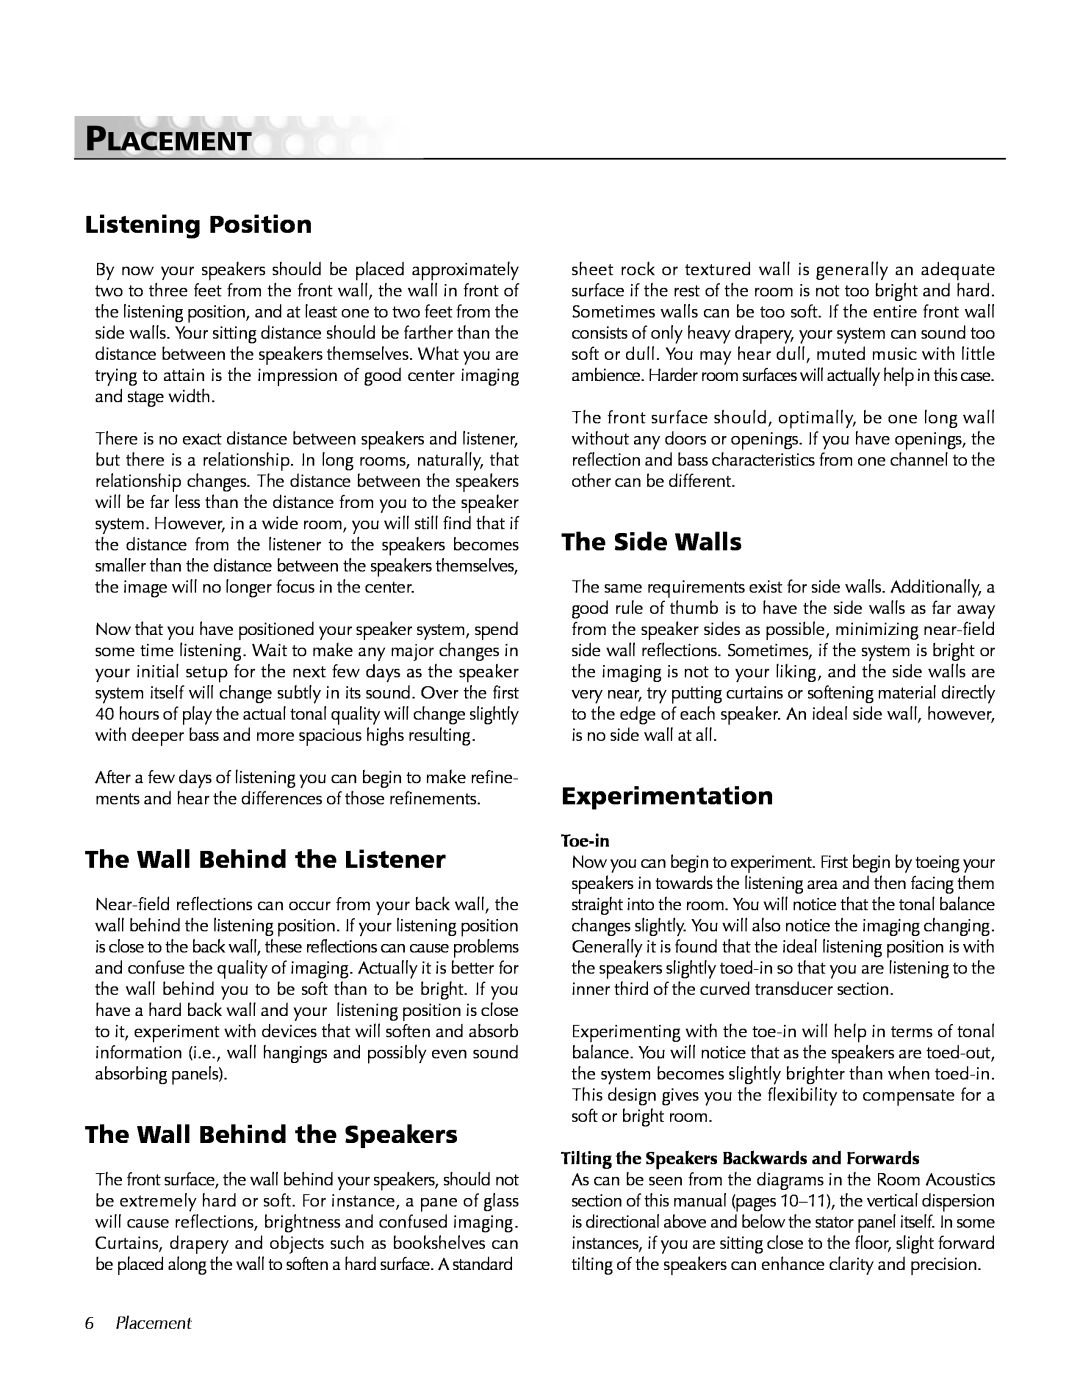 MartinLogan CLS IIz Placement, Listening Position, The Wall Behind the Listener, The Wall Behind the Speakers, Toe-in 